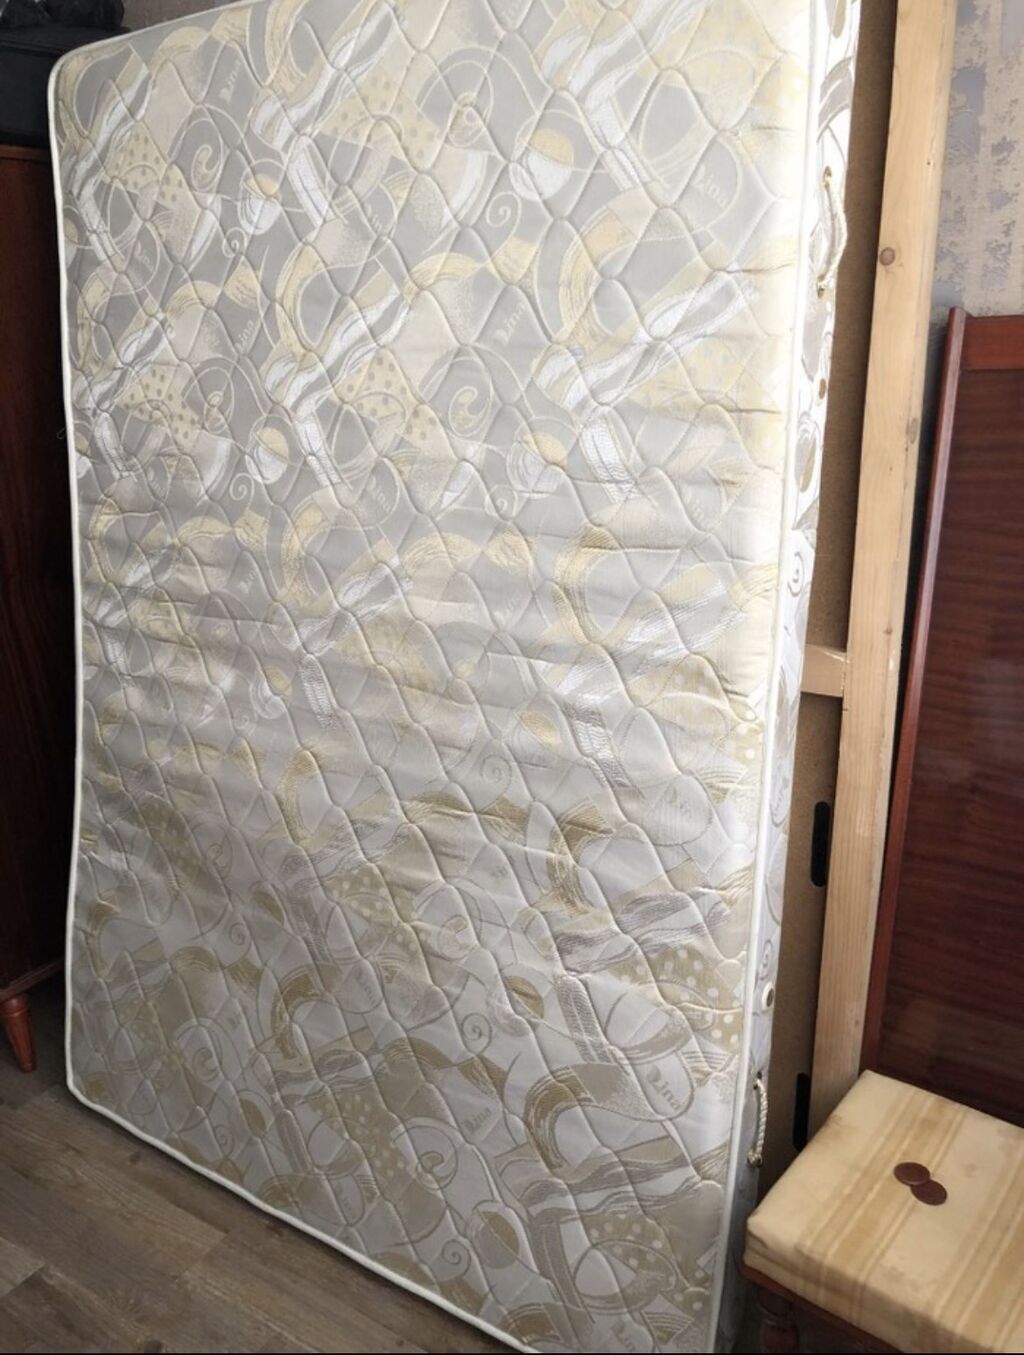 Размер кровати двуспальной с прикроватными тумбочками